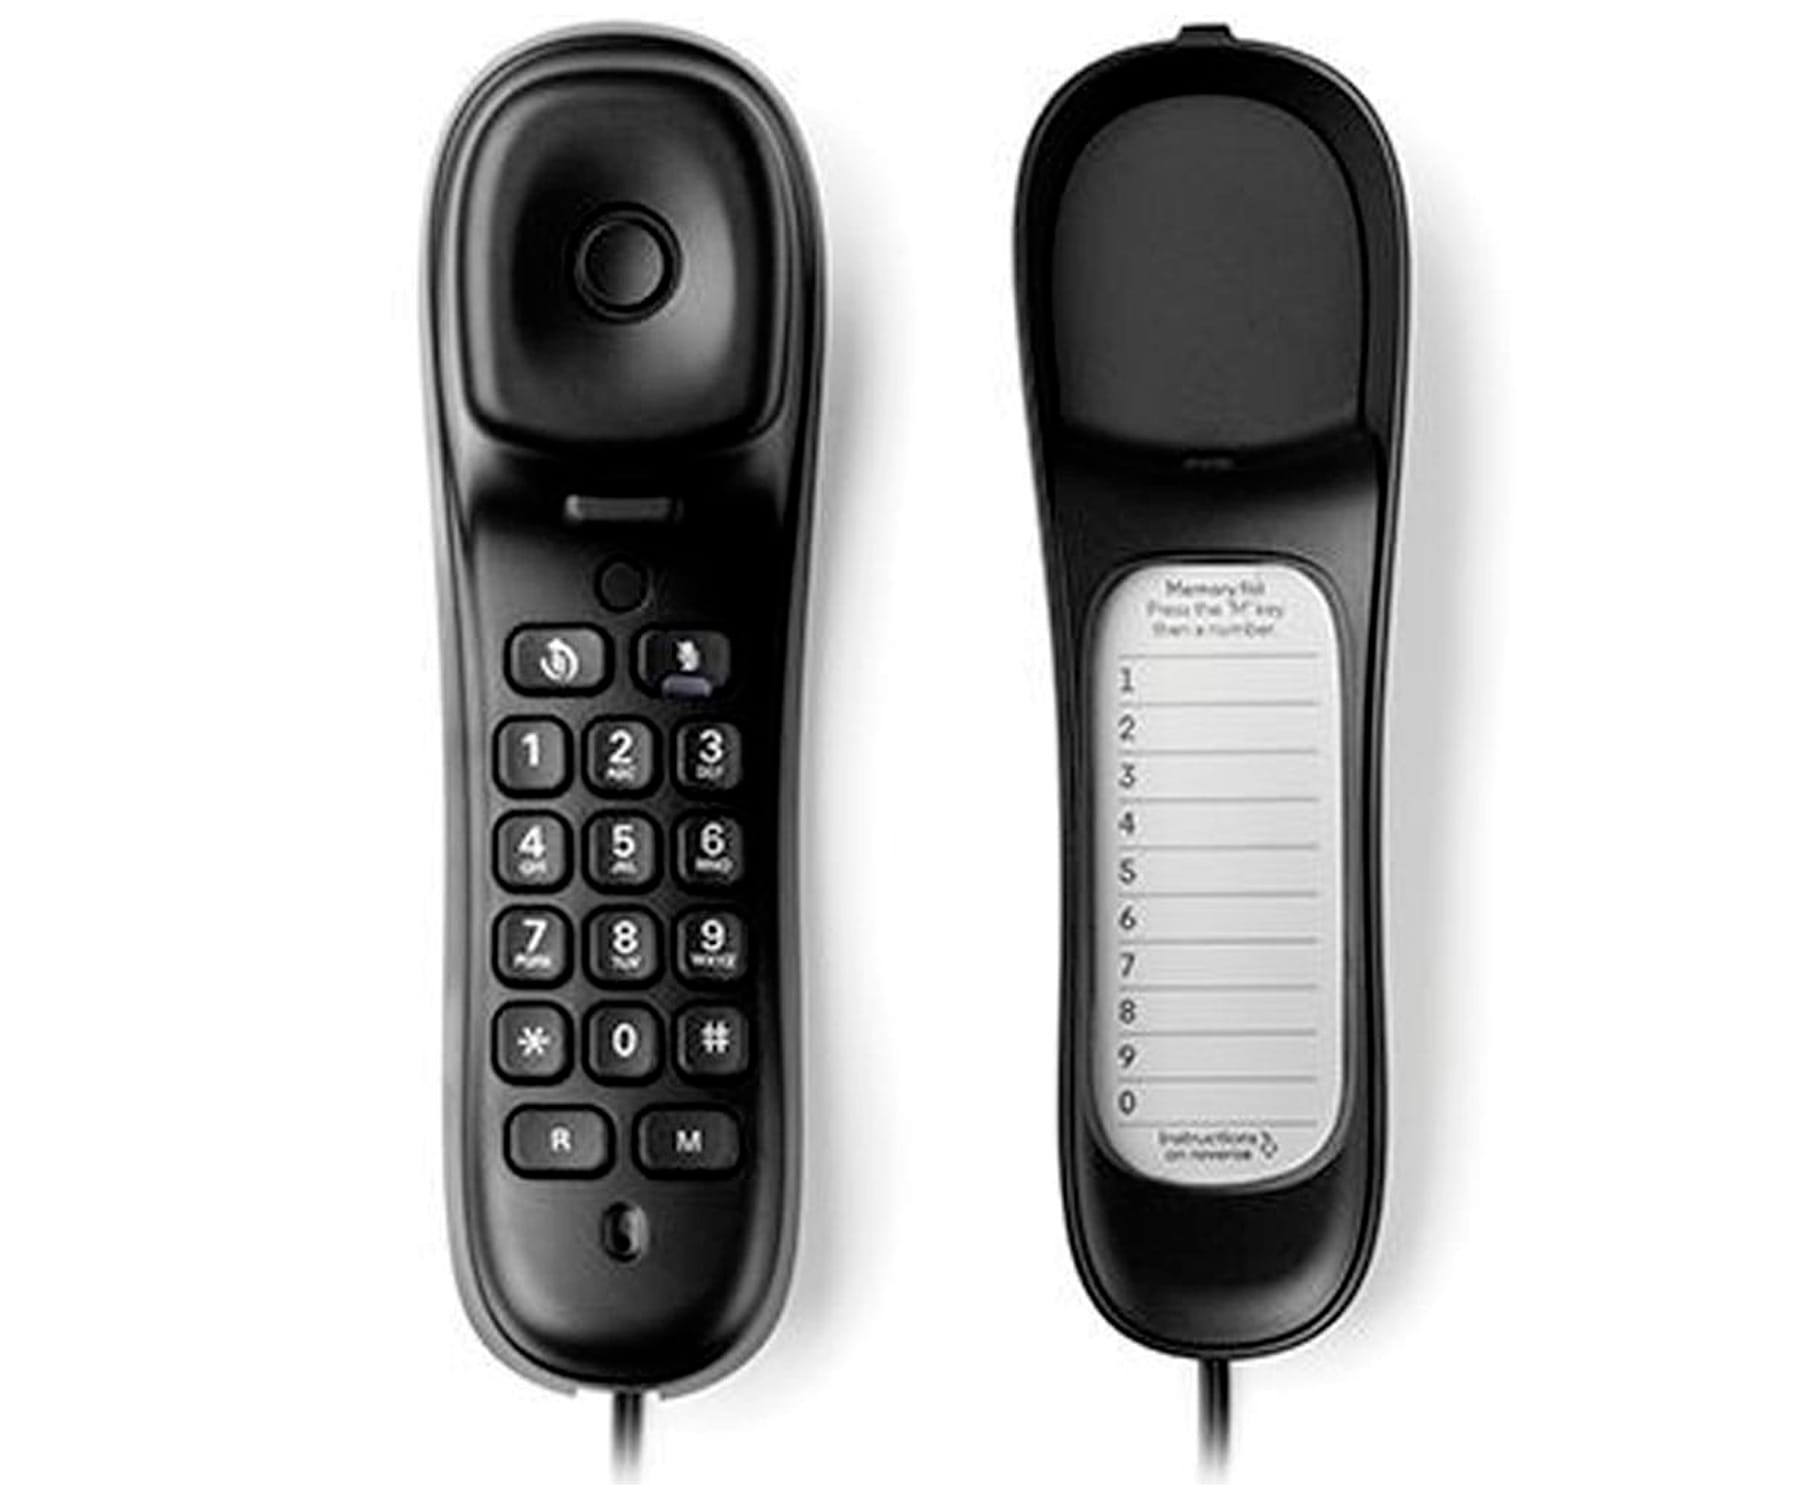 Teléfonos Fijos Inalámbricos y de Sobremesa - motorola C1001LB+ Violeta / Teléfono  inalámbrico MOTOROLA, Rosa